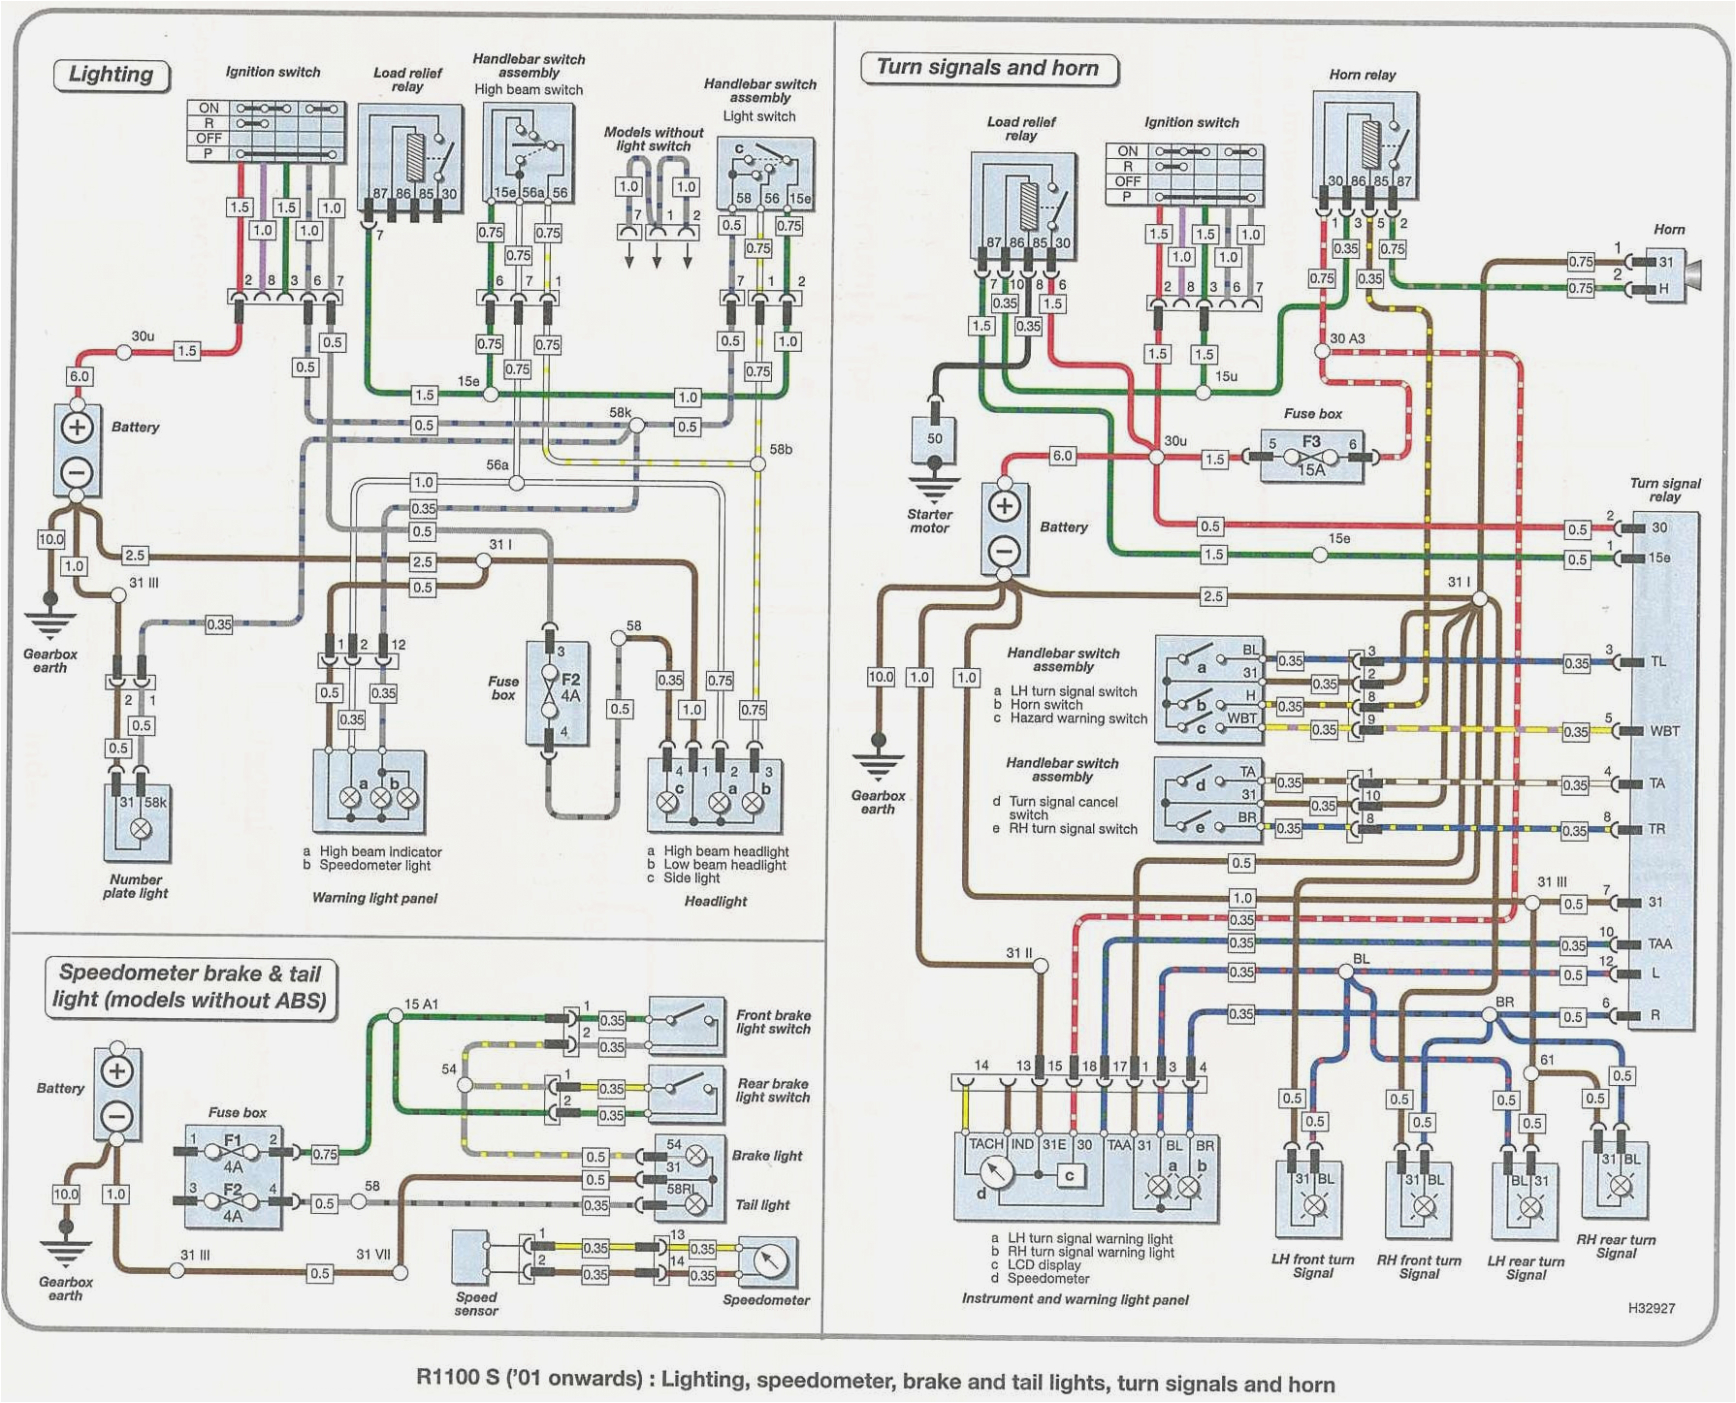 bmw e15 wiring diagrams wiring diagramsbmw e15 wiring diagrams wiring diagram schematic bmw e15 wiring diagrams